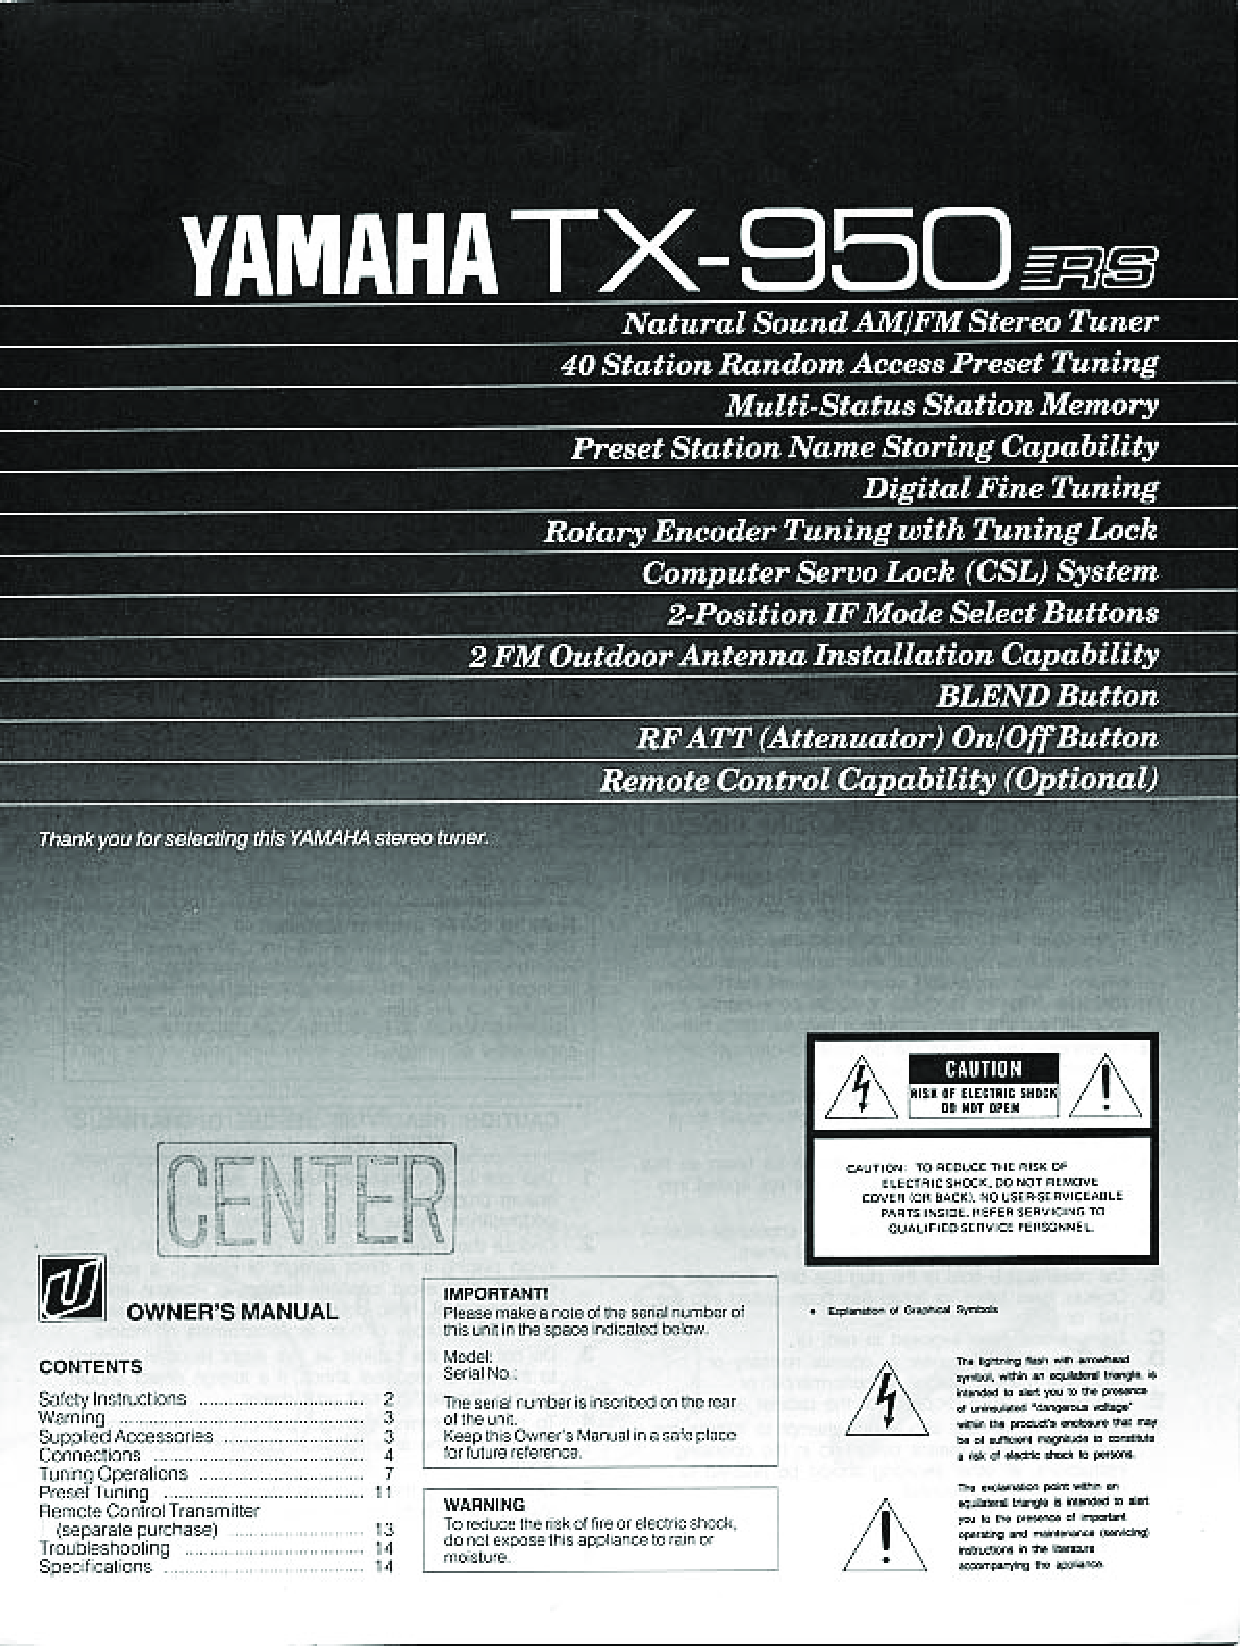 Yamaha TX950 User Manual